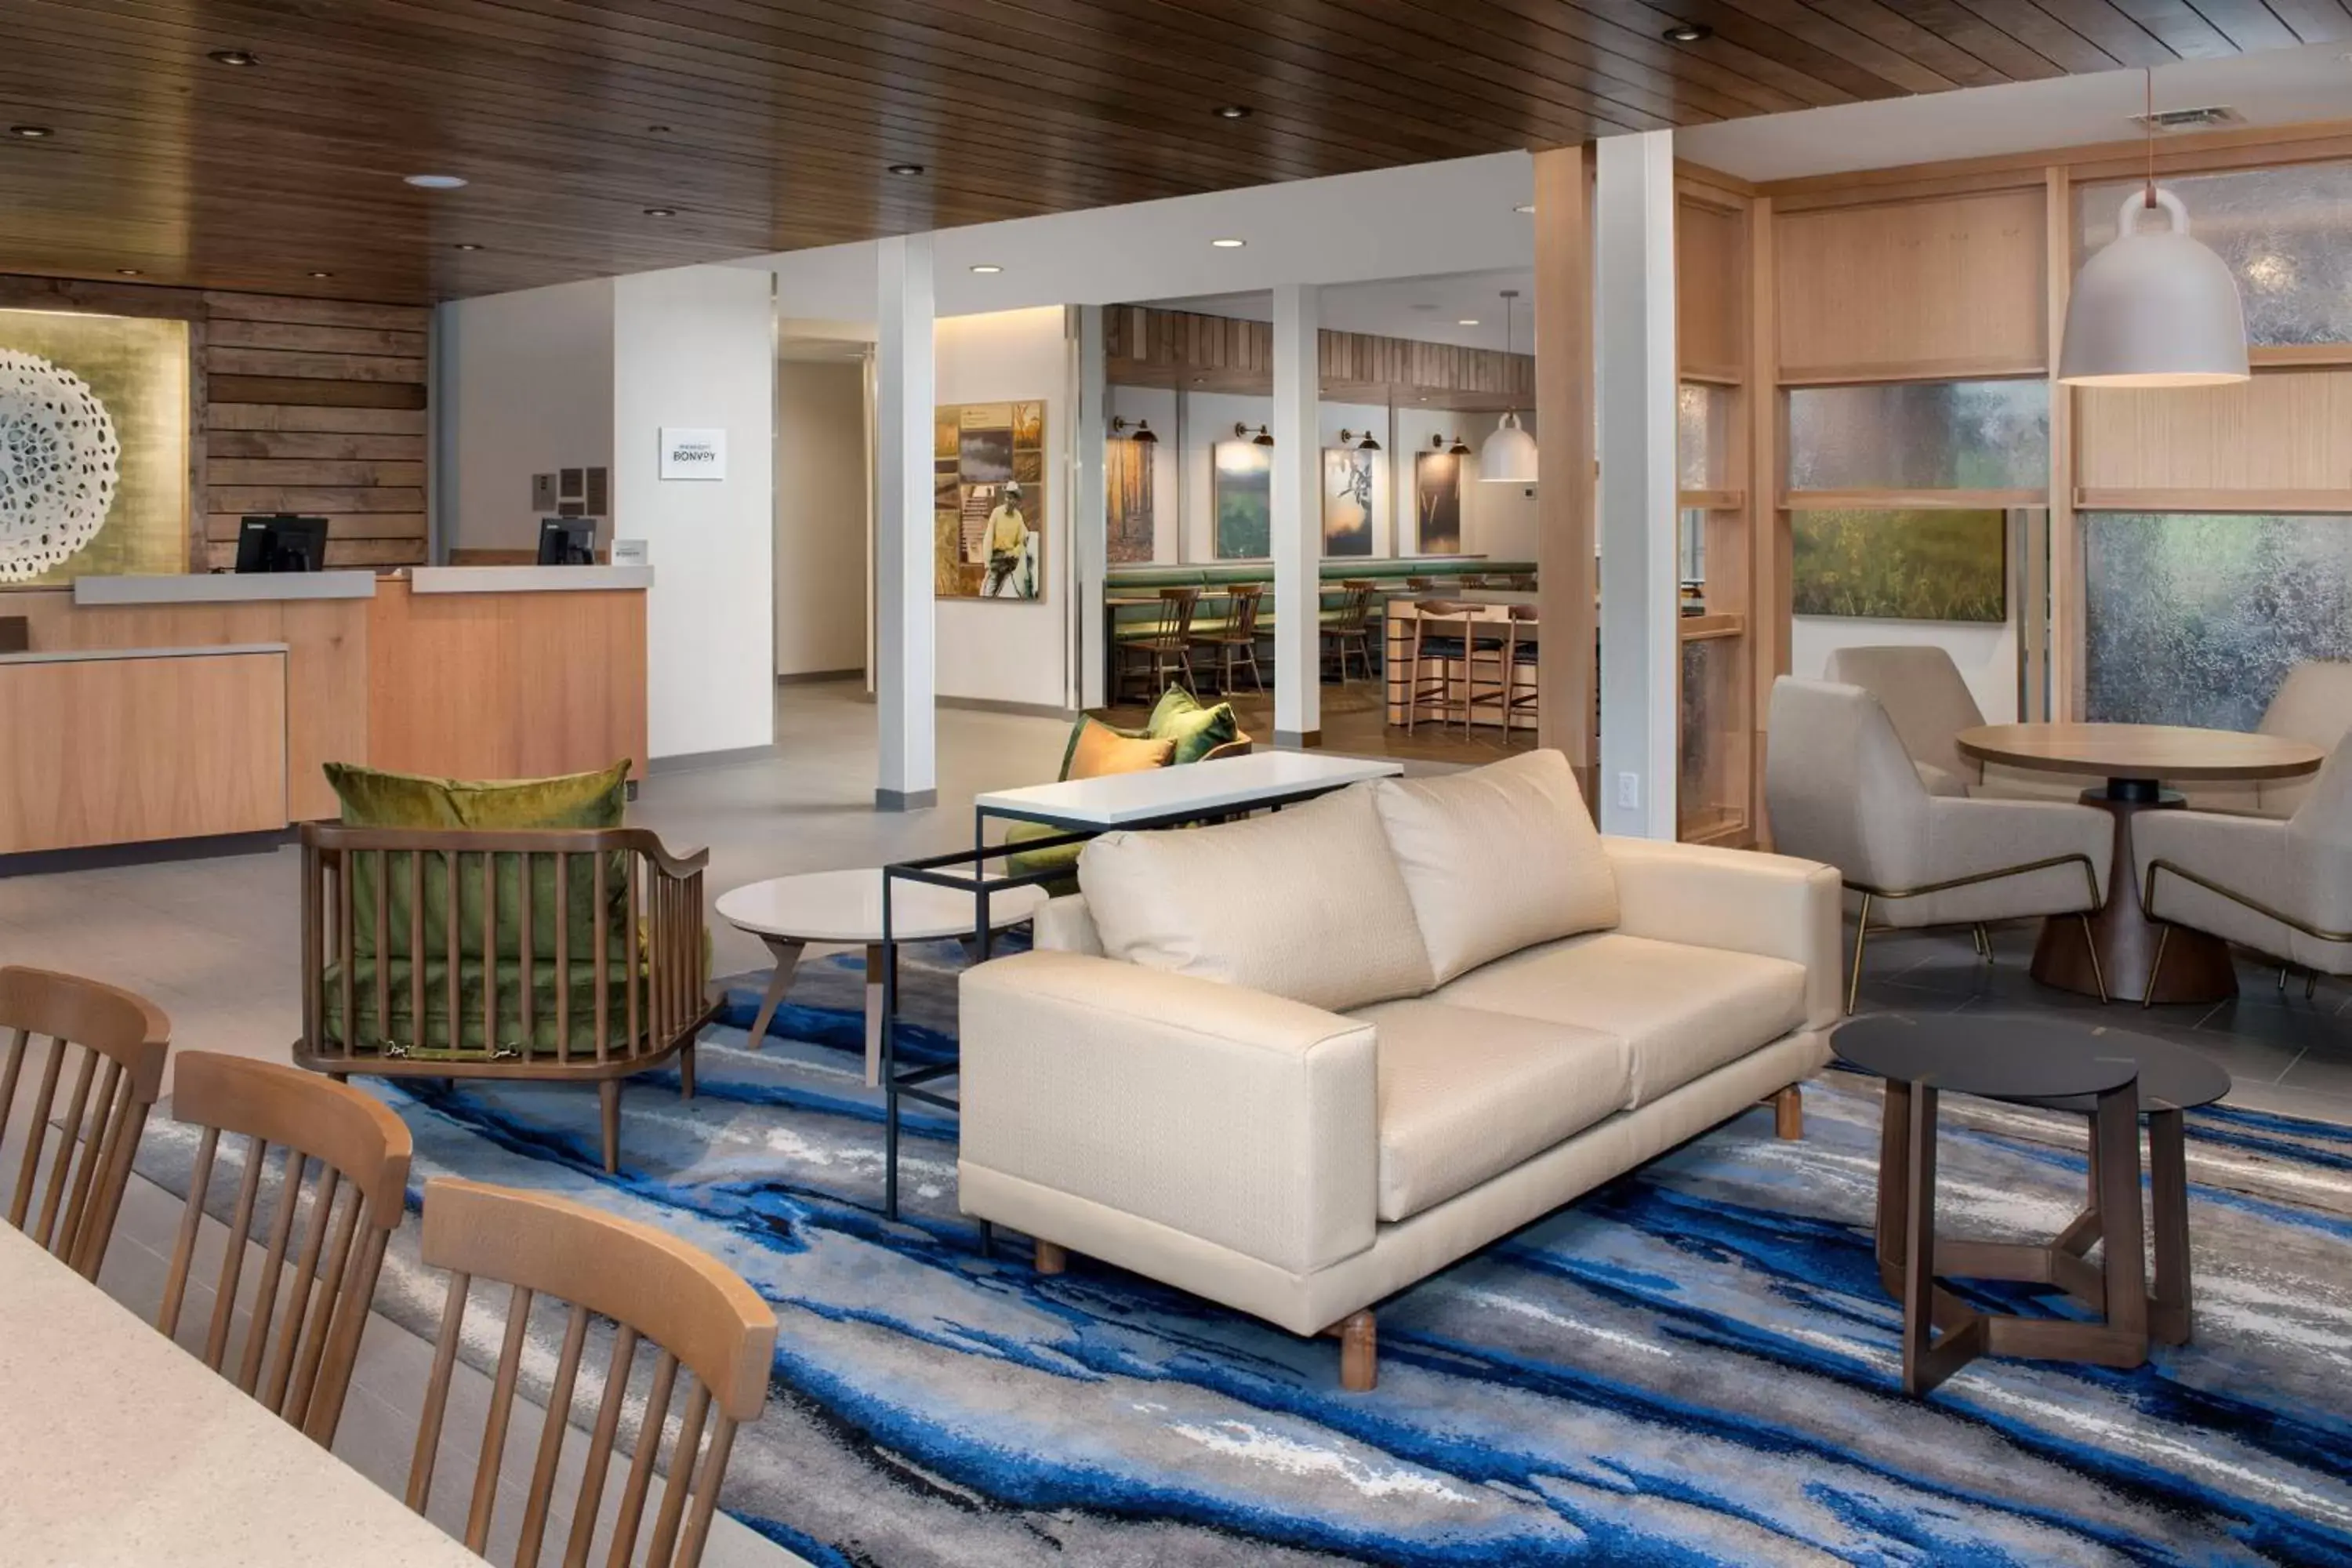 Lobby or reception in Fairfield Inn & Suites by Marriott Knoxville Lenoir City/I-75